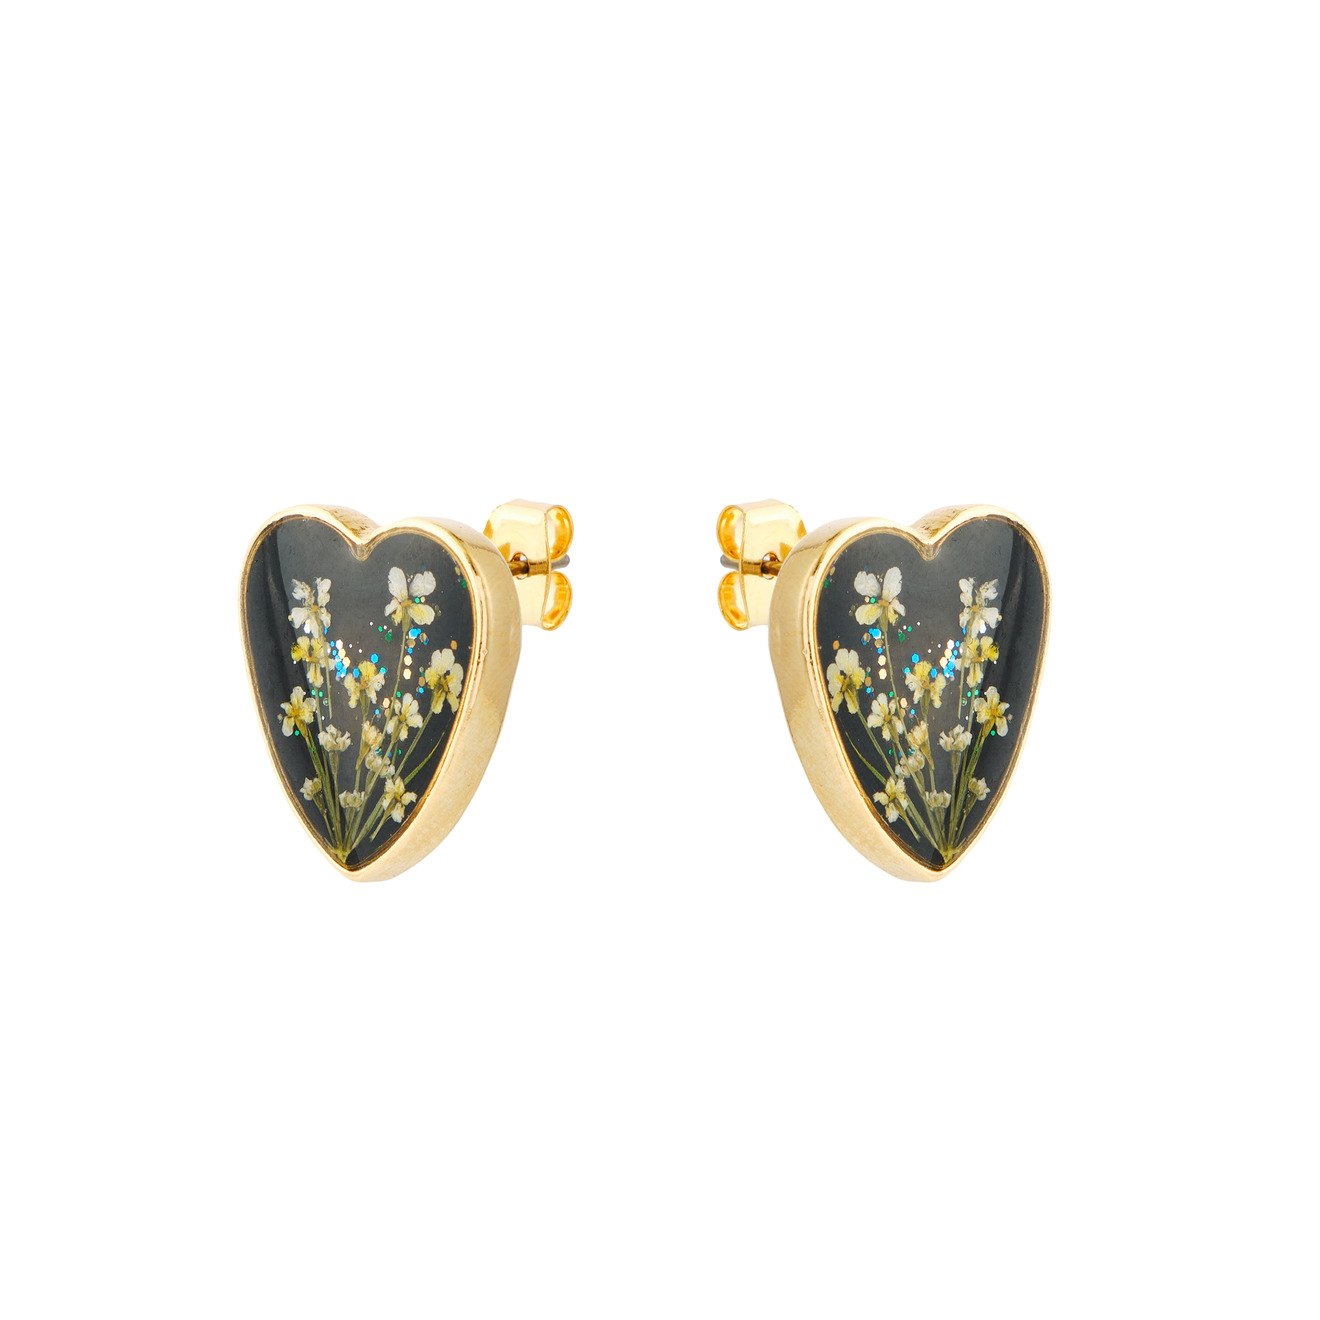 Wisteria Gems Золотистые черные серьги-сердца с зелеными цветками wisteria gems жемчужные серьги кольца